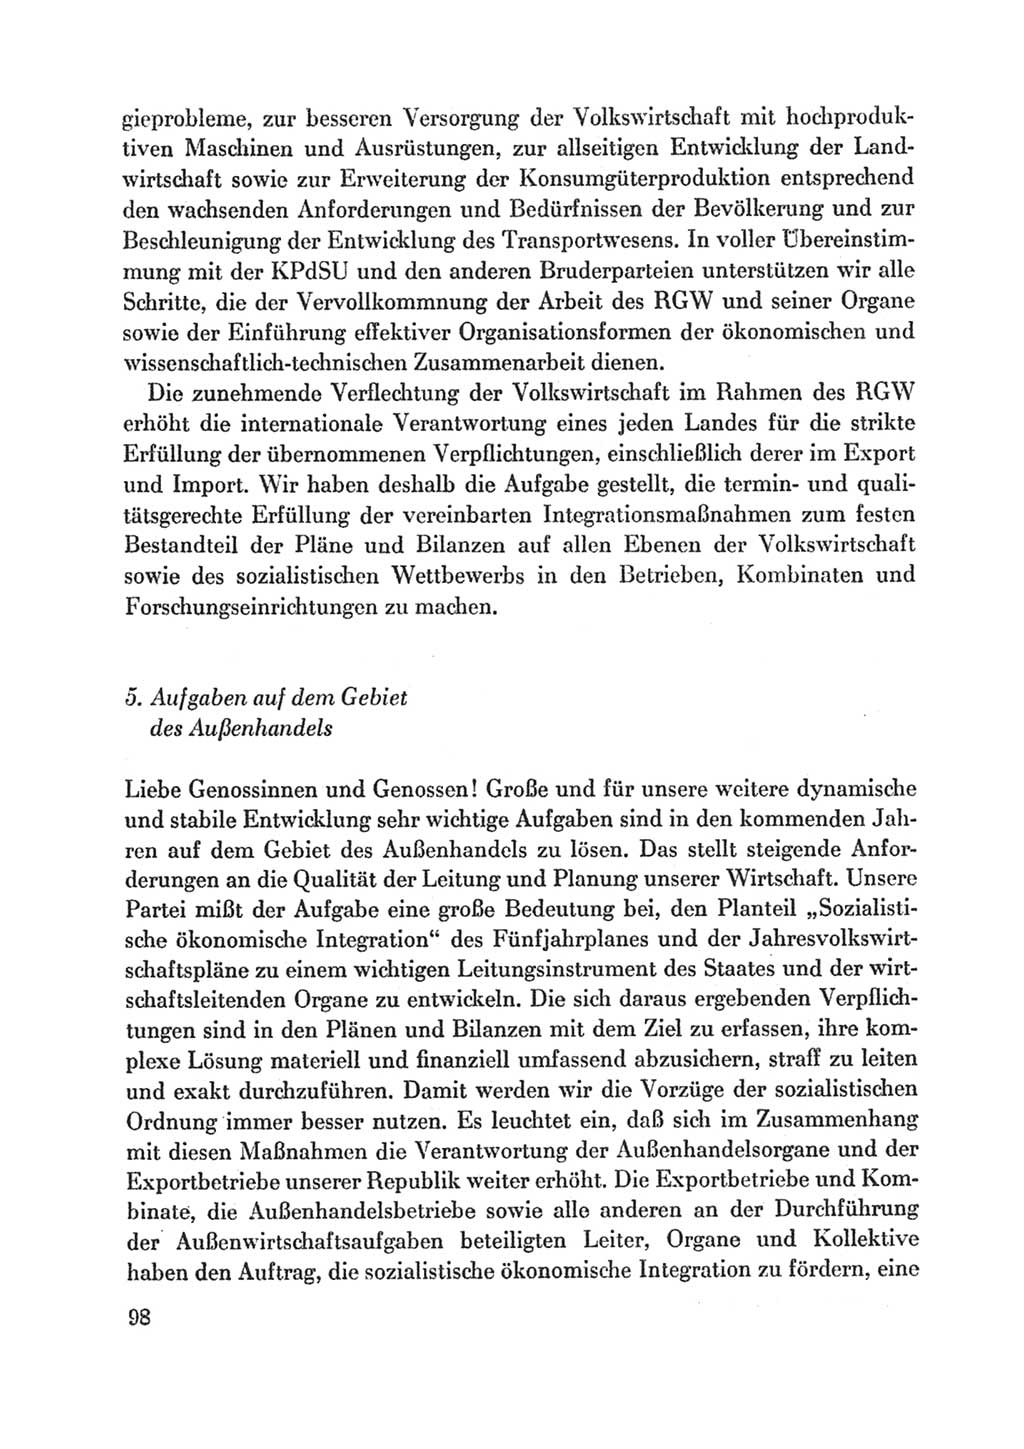 Protokoll der Verhandlungen des Ⅸ. Parteitages der Sozialistischen Einheitspartei Deutschlands (SED) [Deutsche Demokratische Republik (DDR)] 1976, Band 1, Seite 98 (Prot. Verh. Ⅸ. PT SED DDR 1976, Bd. 1, S. 98)